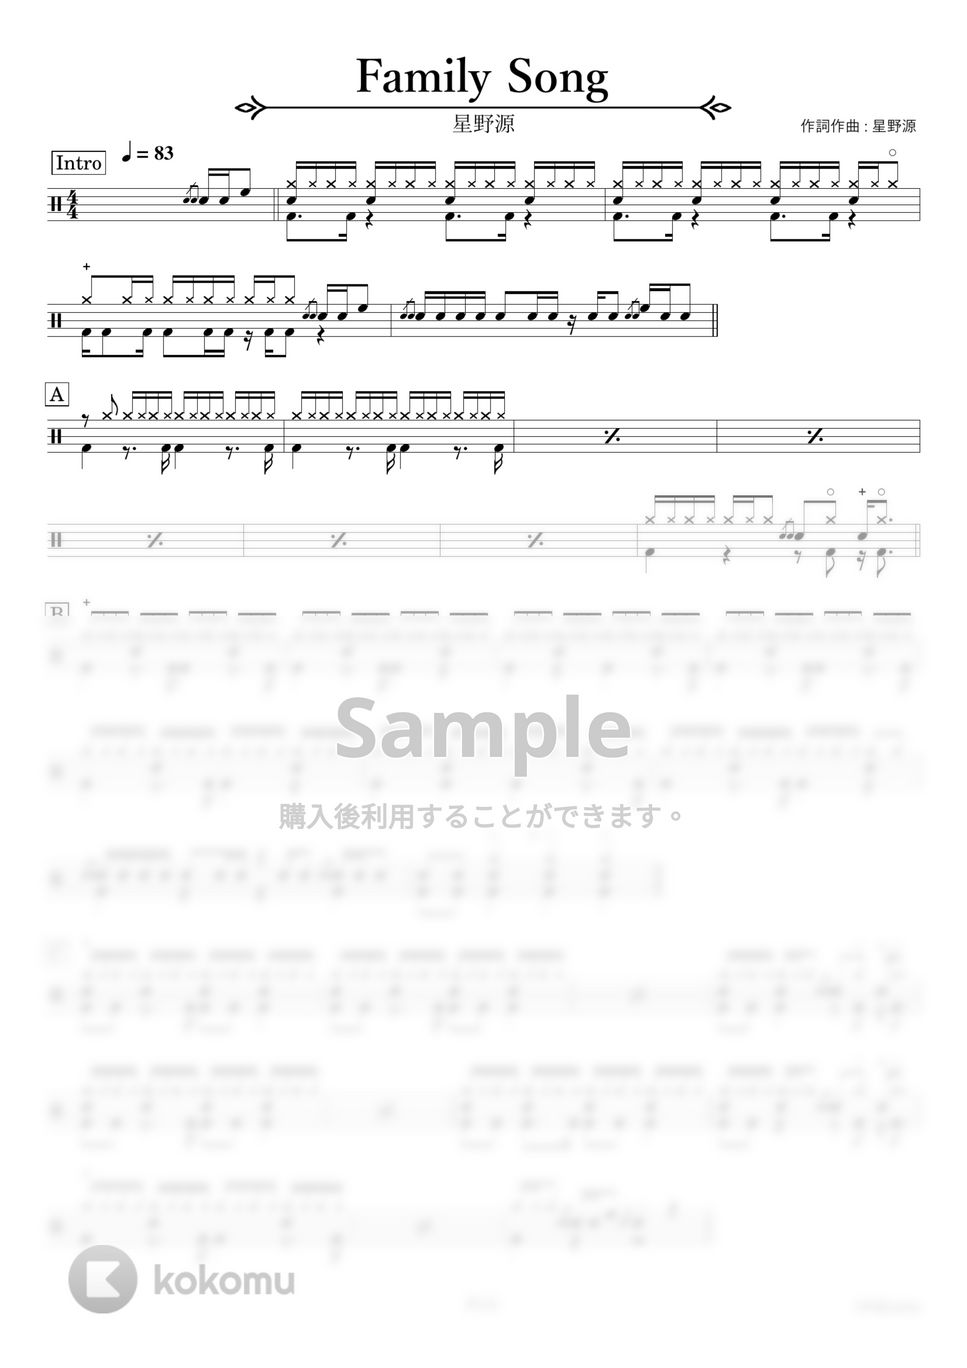 星野源 - Family Song〔完コピ〕 by HYdrums